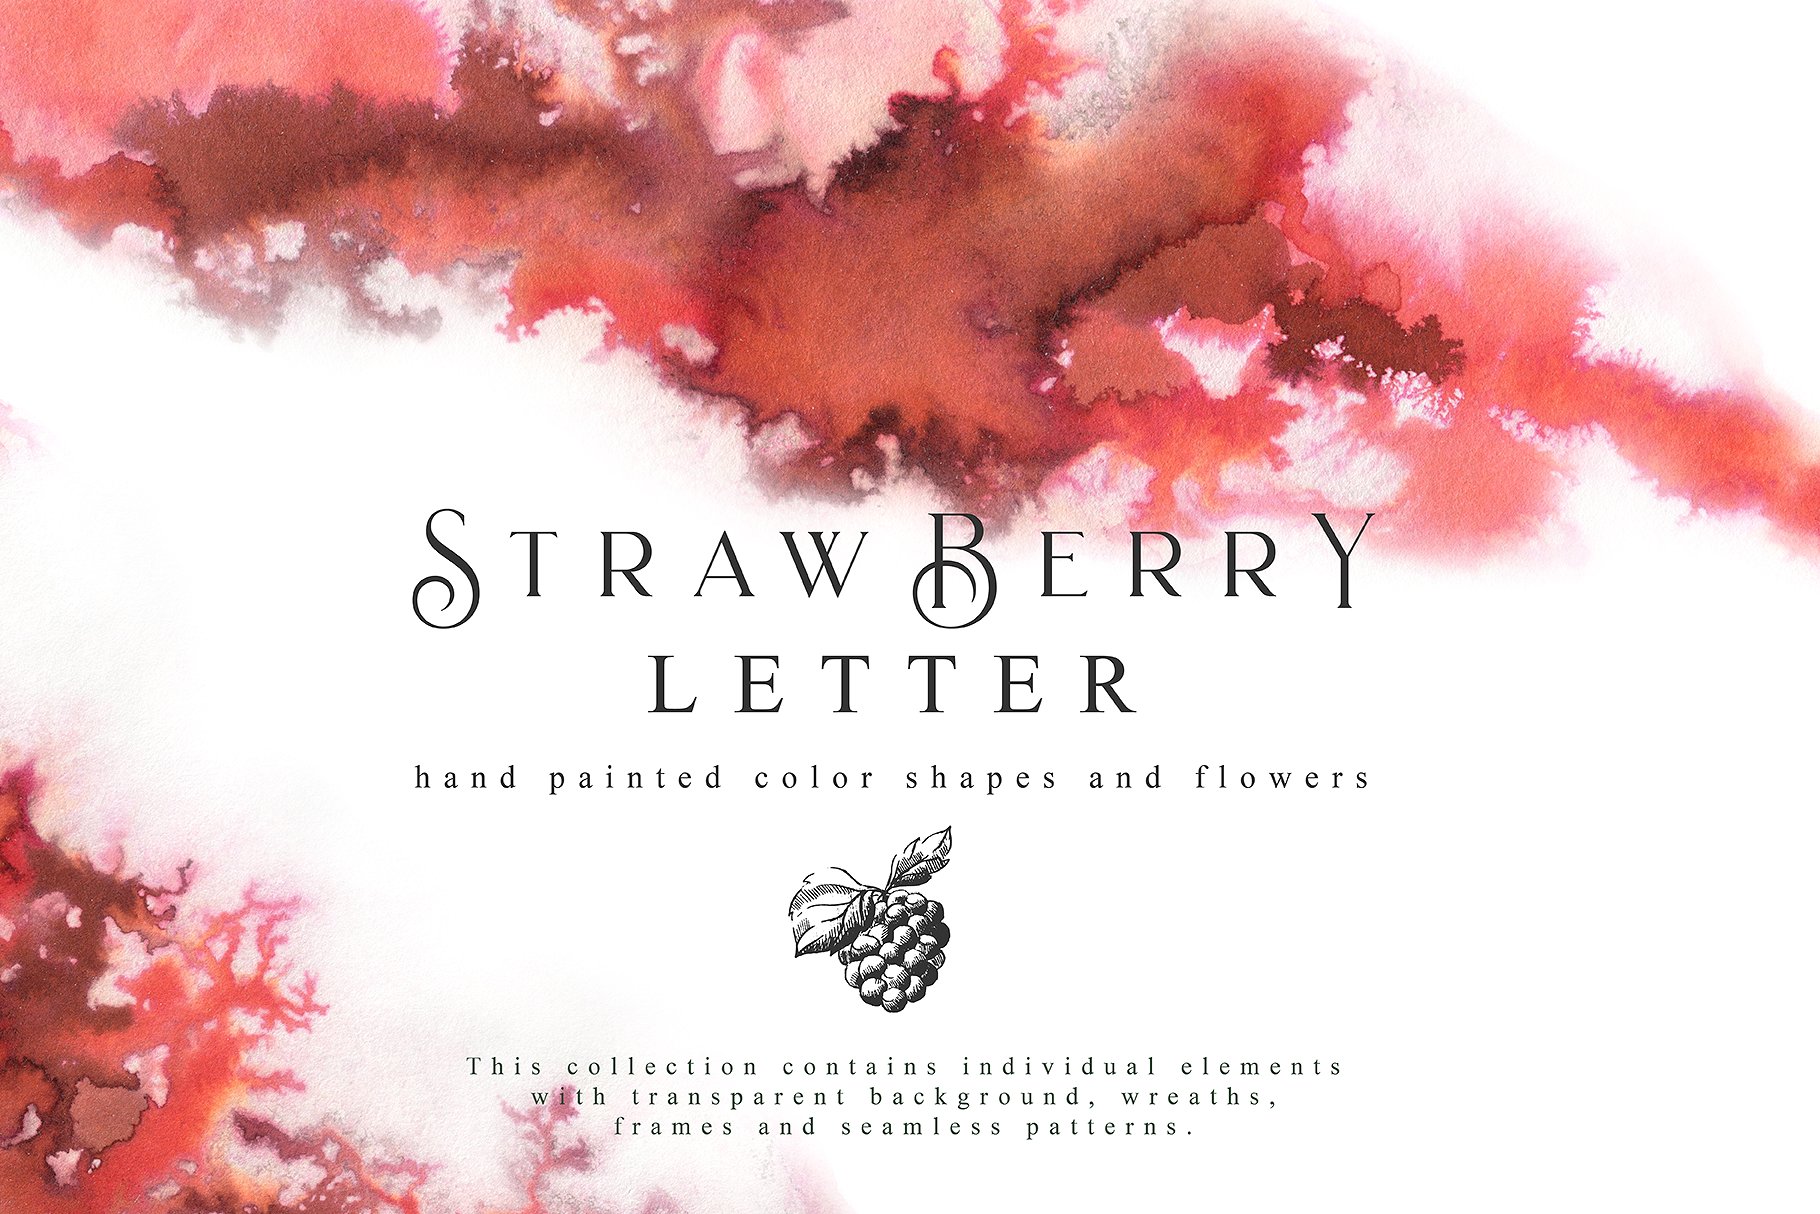 草莓主题手绘设计素材合集 Strawberry Letter Collection Pro插图